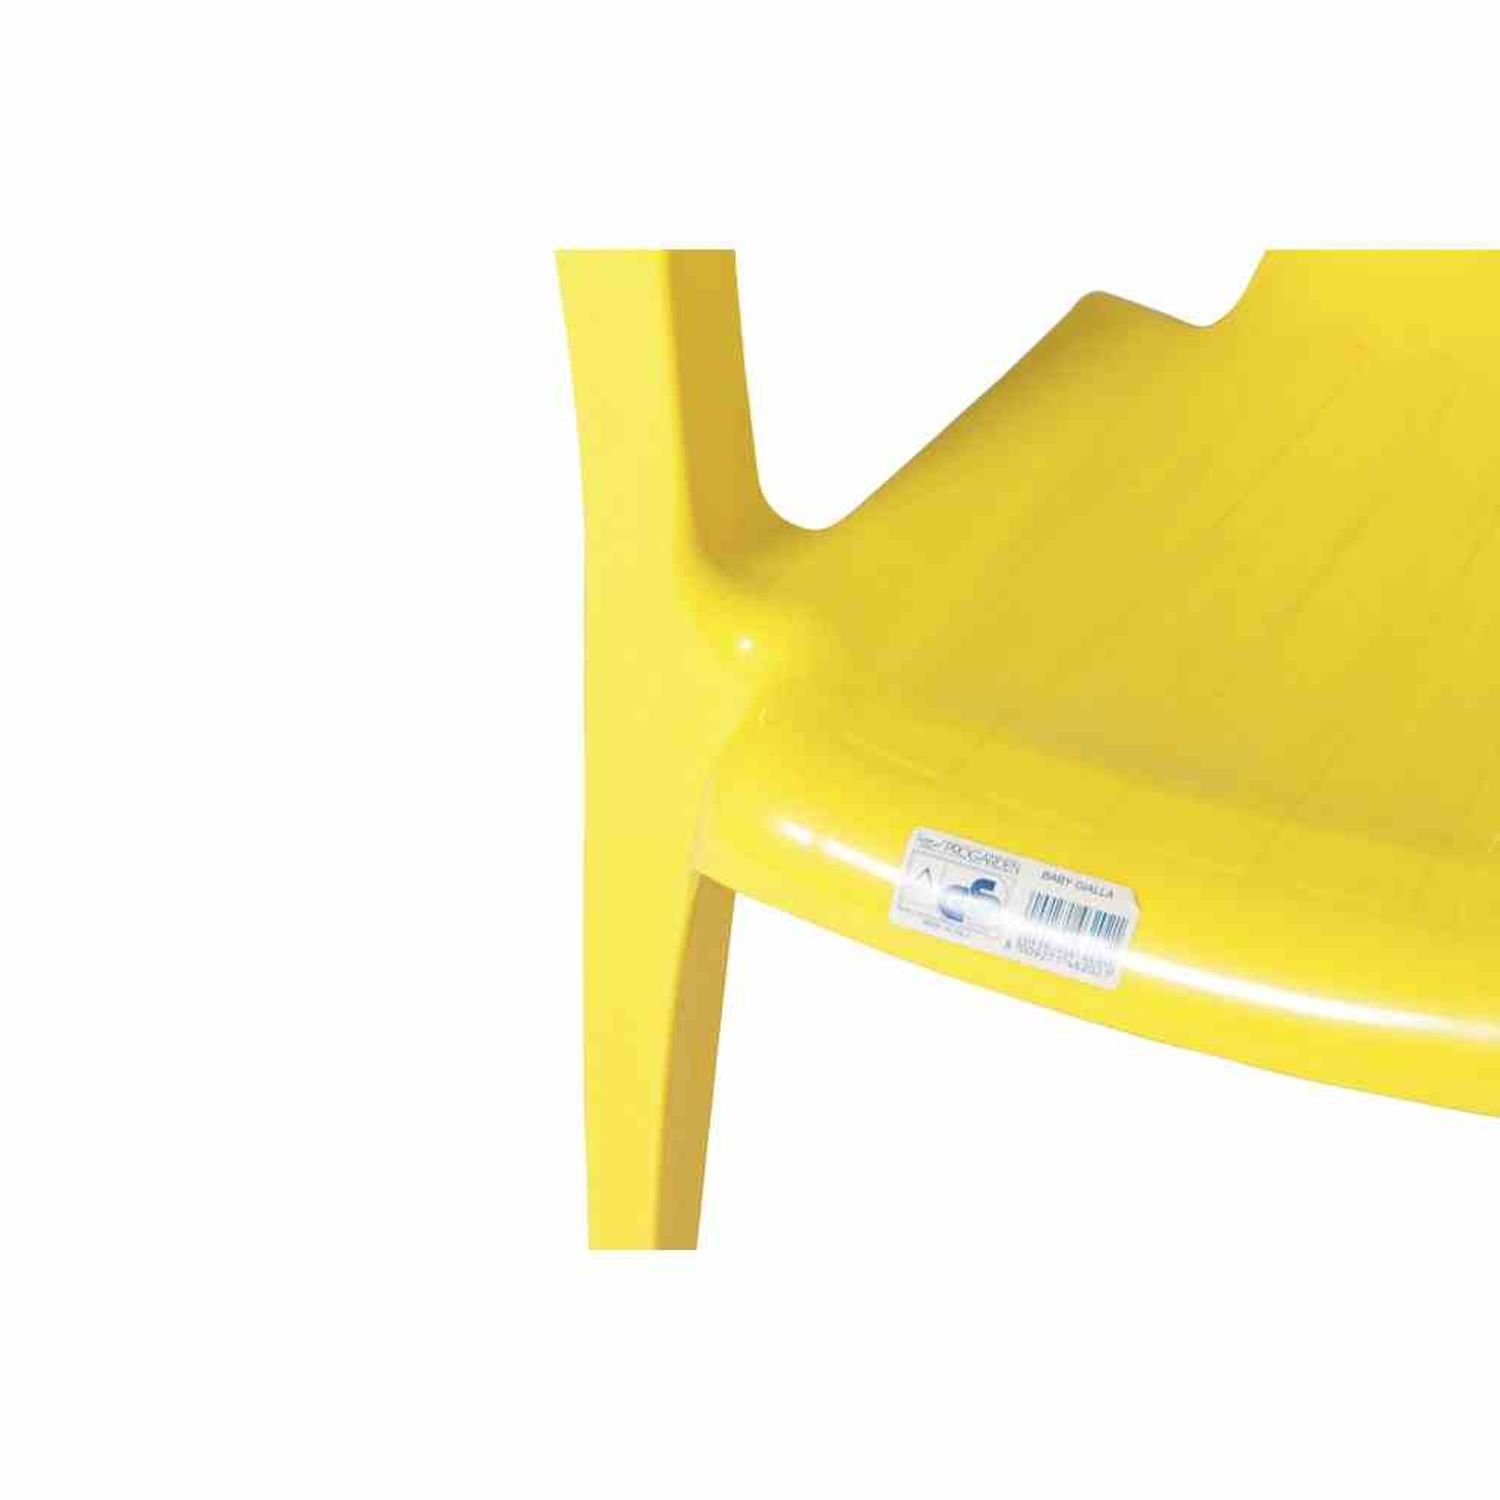 Ipae-Progarden Kinderstuhl Kinderstuhl, gelb Vollkunststoff, Monoblock, stapelbar